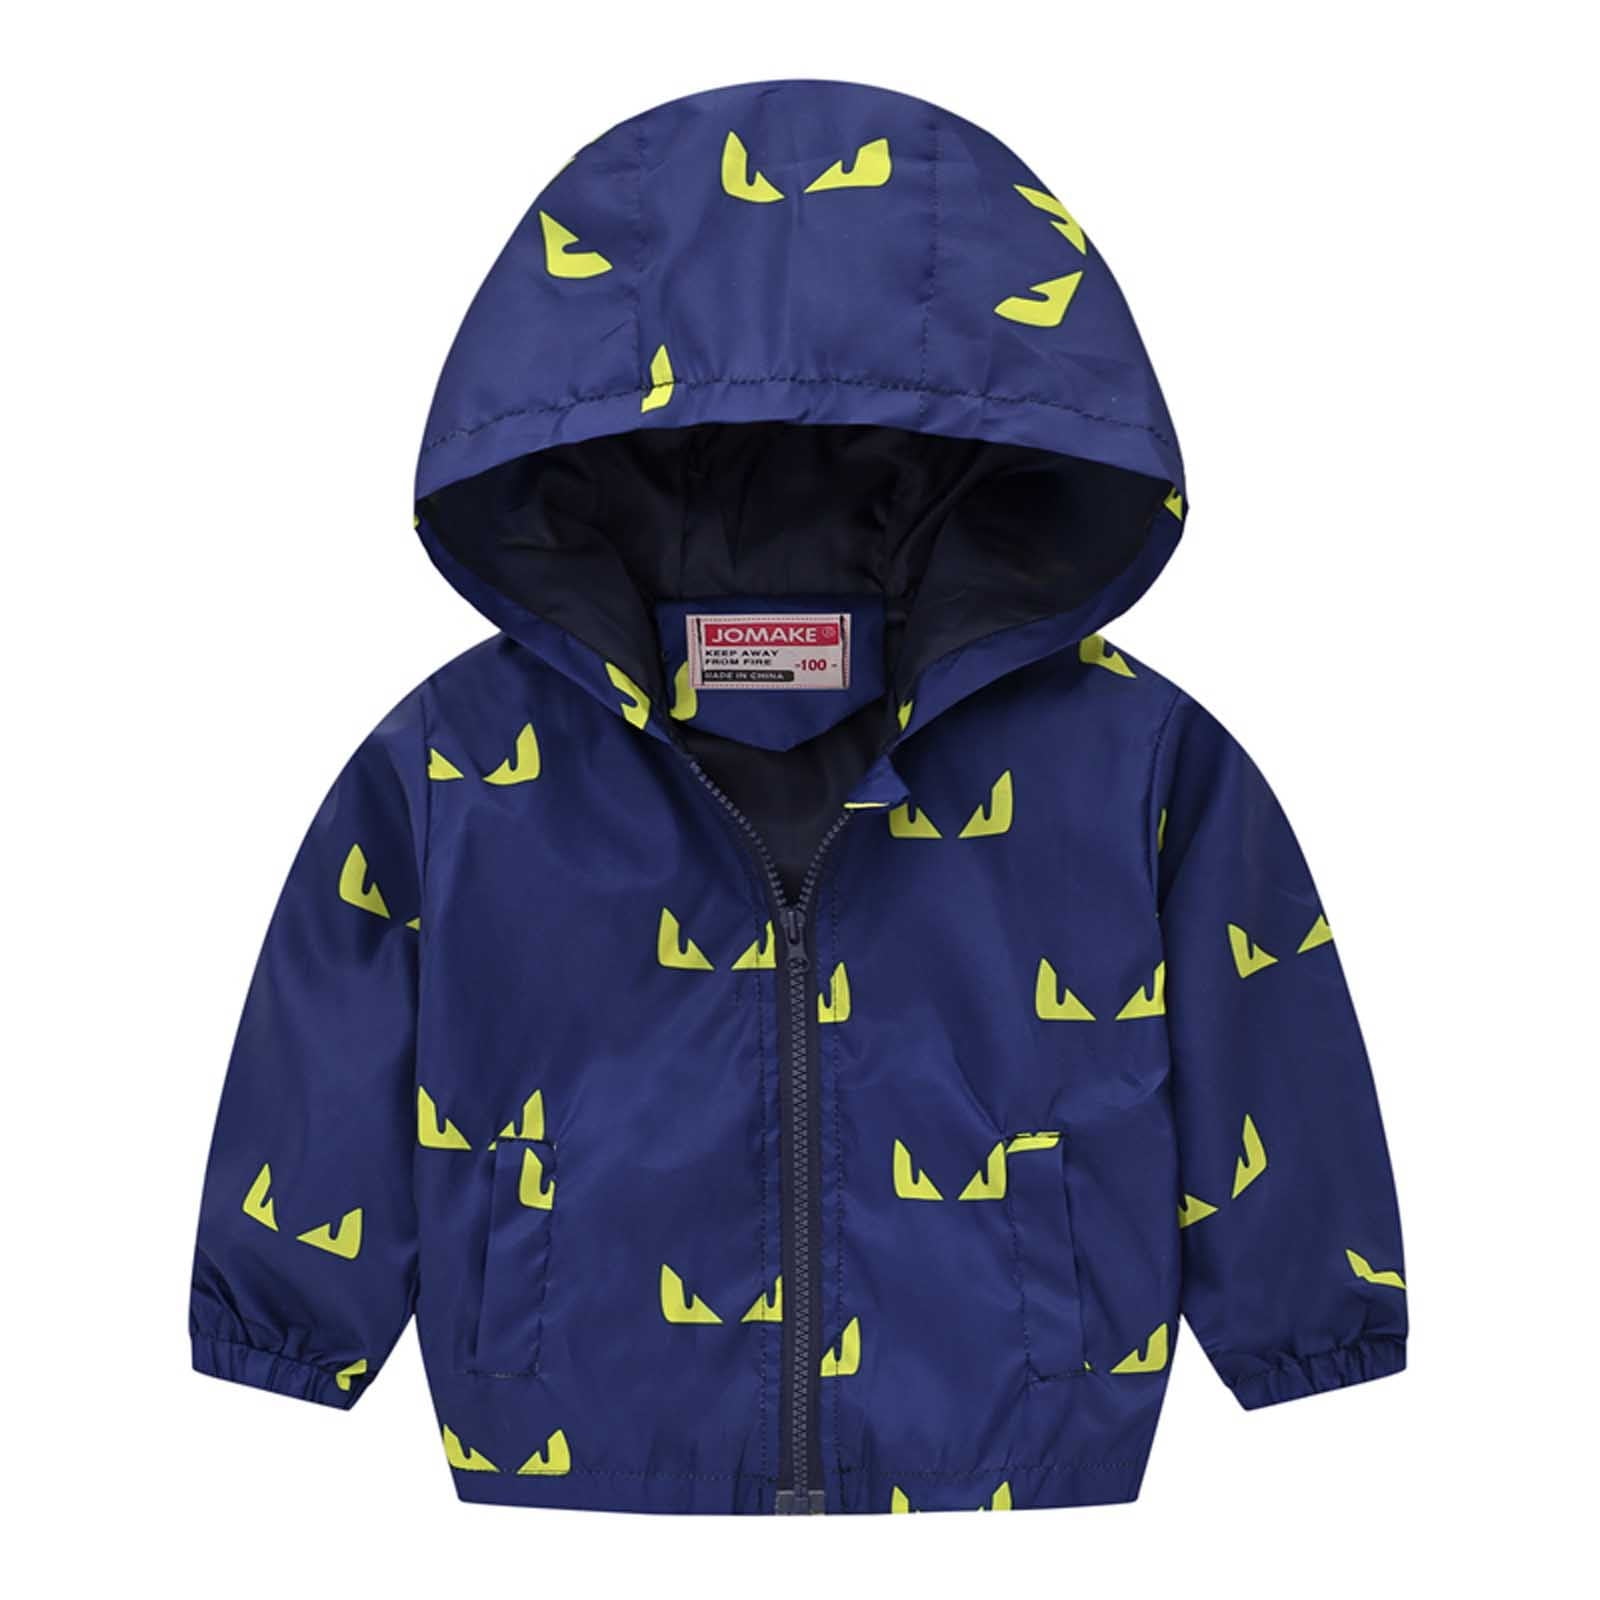 Kids' Winter Warm Coat Toddler Outerwear Boy Hooded Jacket Windbreaker Clothes